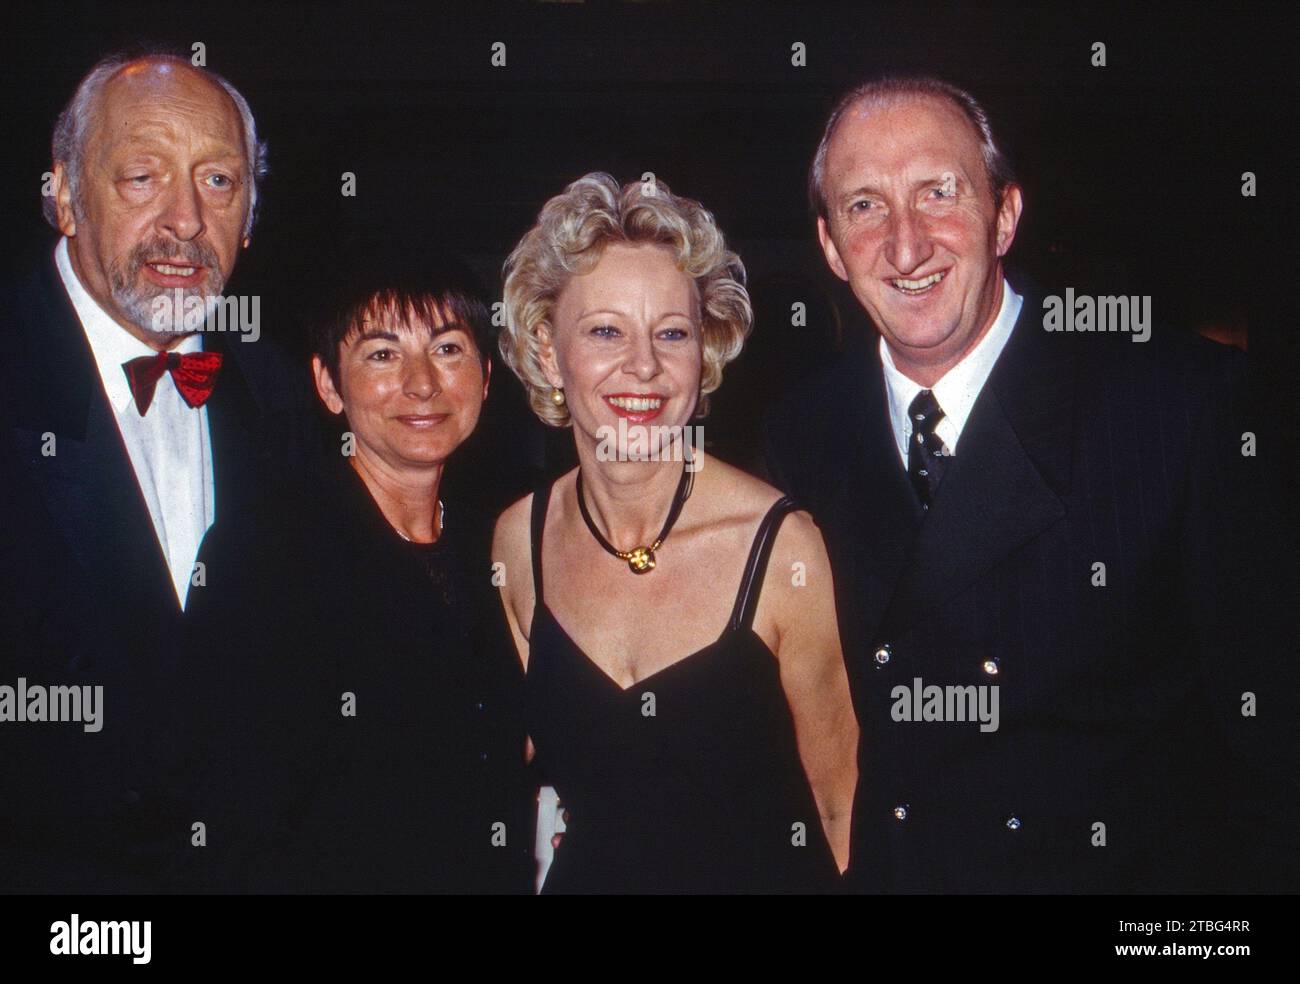 Komiker Karl Dall mit Ehefrau Barbara, Mike Krüger mit Ehefrau Birgit, Bild von 1998. Stock Photo